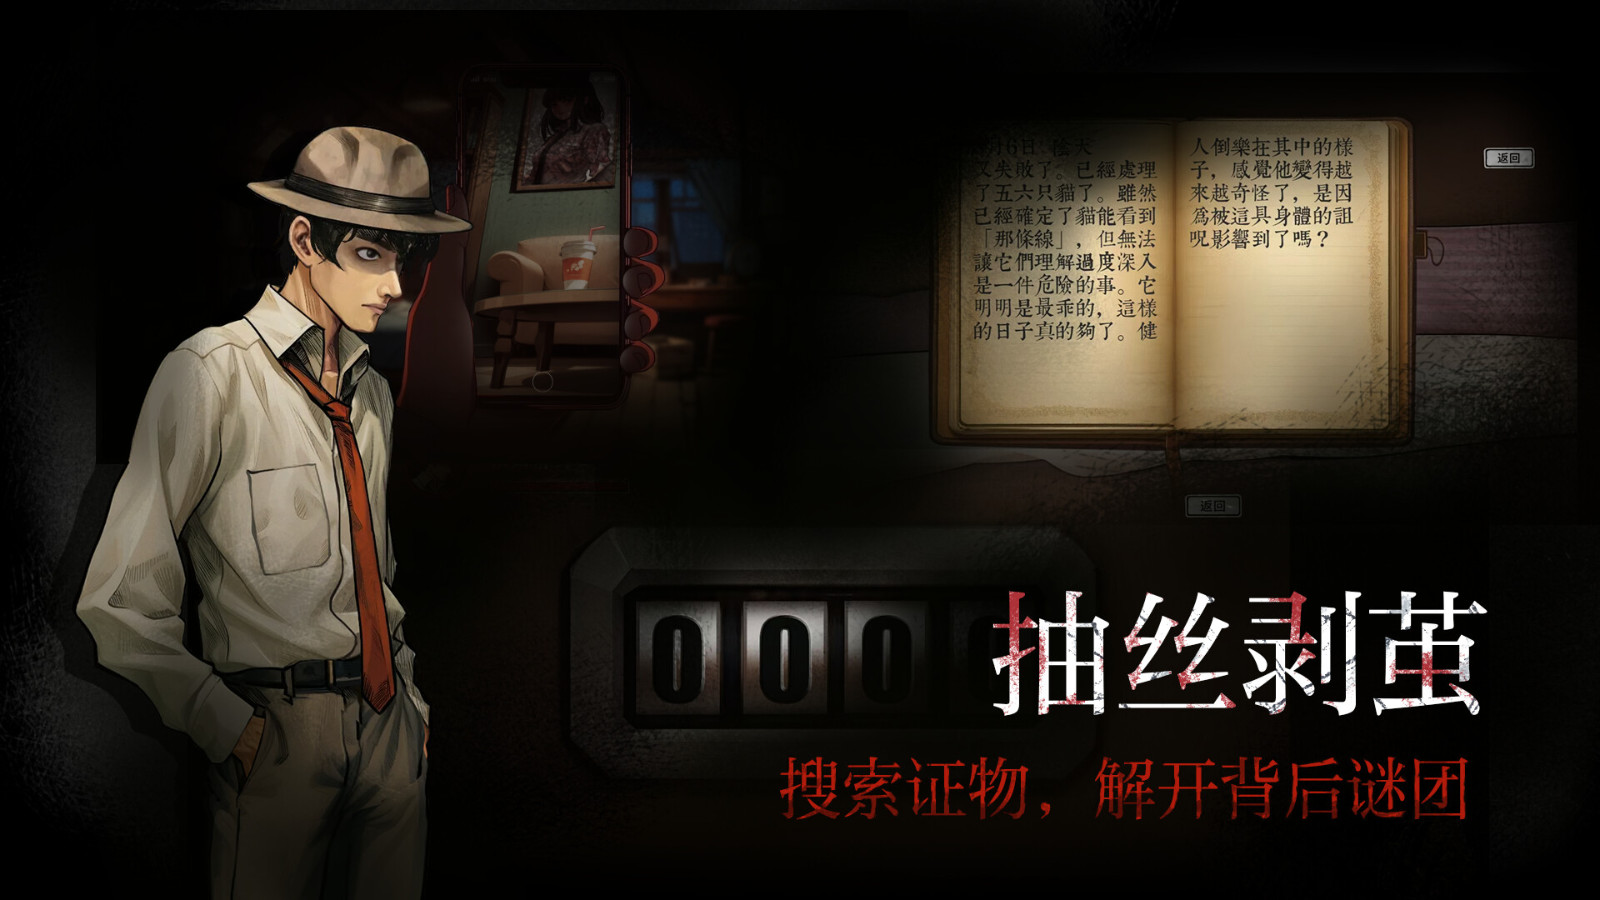 《岚与山之彼端》Steam页面上线 支持简繁体中文